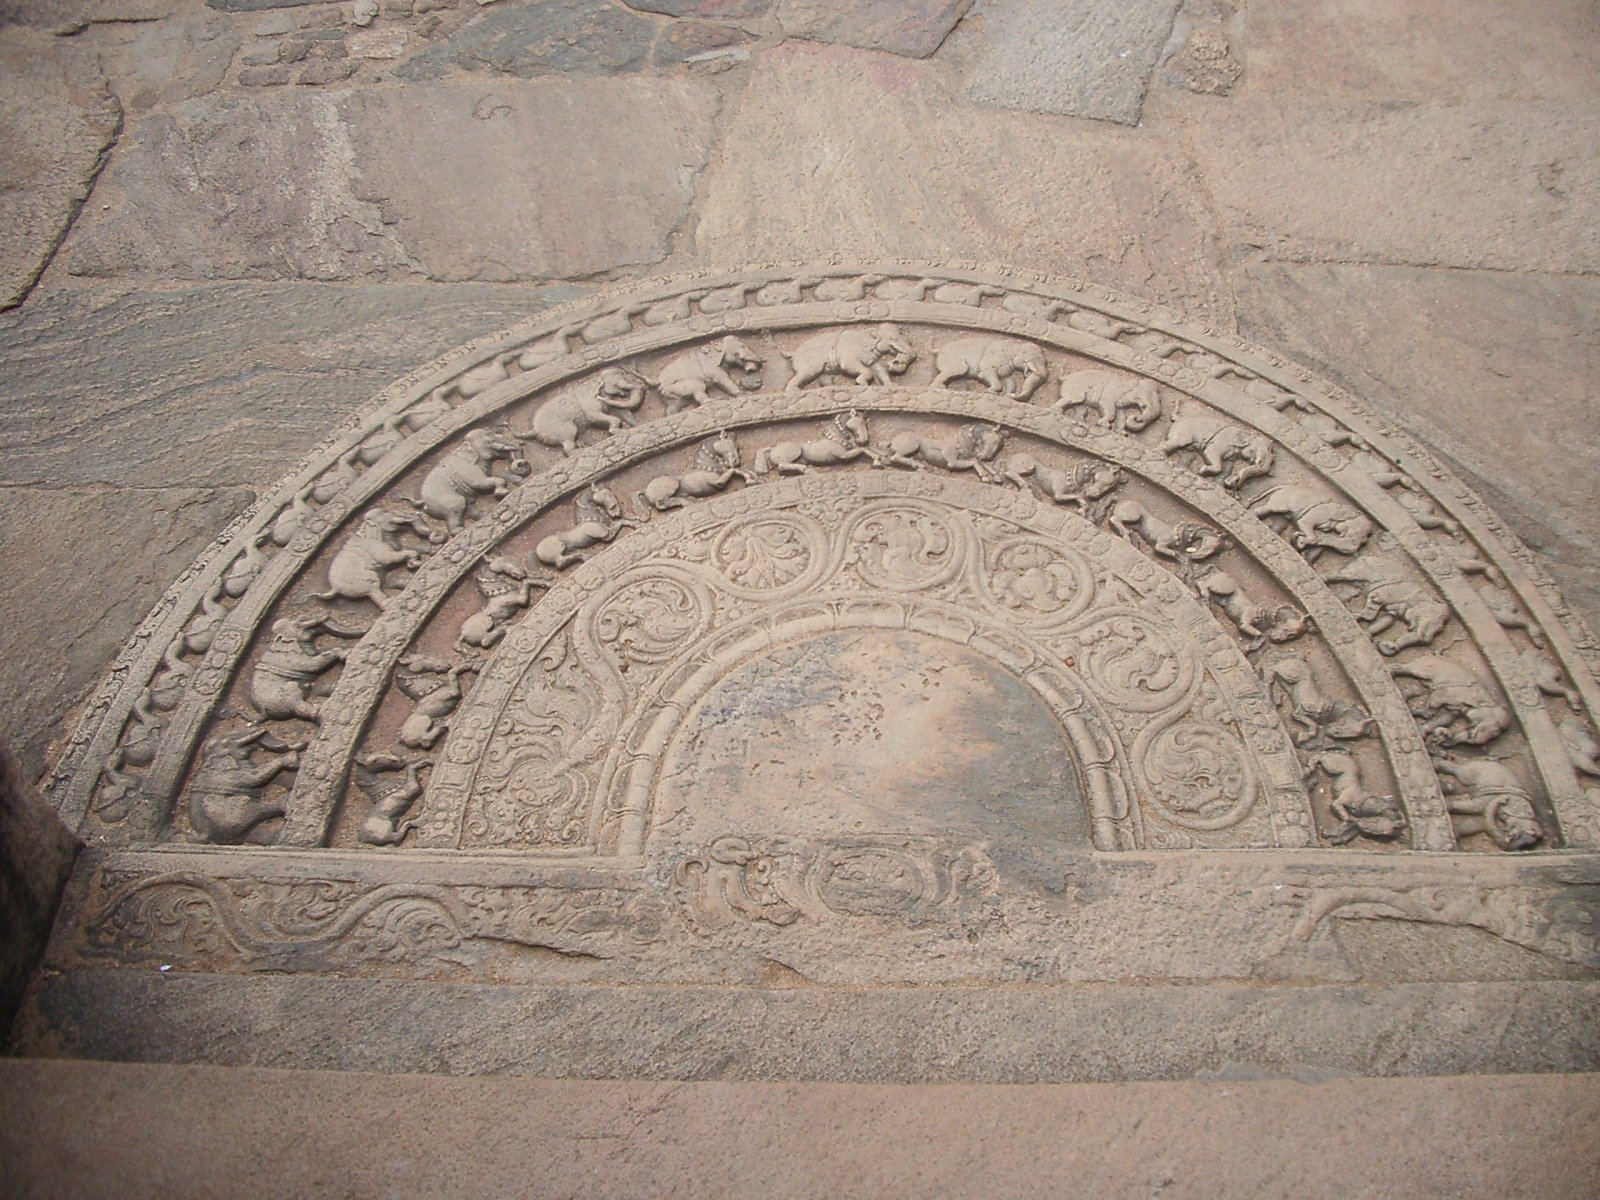 The iconic Sandhakada Pahana (moon stone) of the Polonnaruwa kingdom. Credit: Wikimedia Commons.